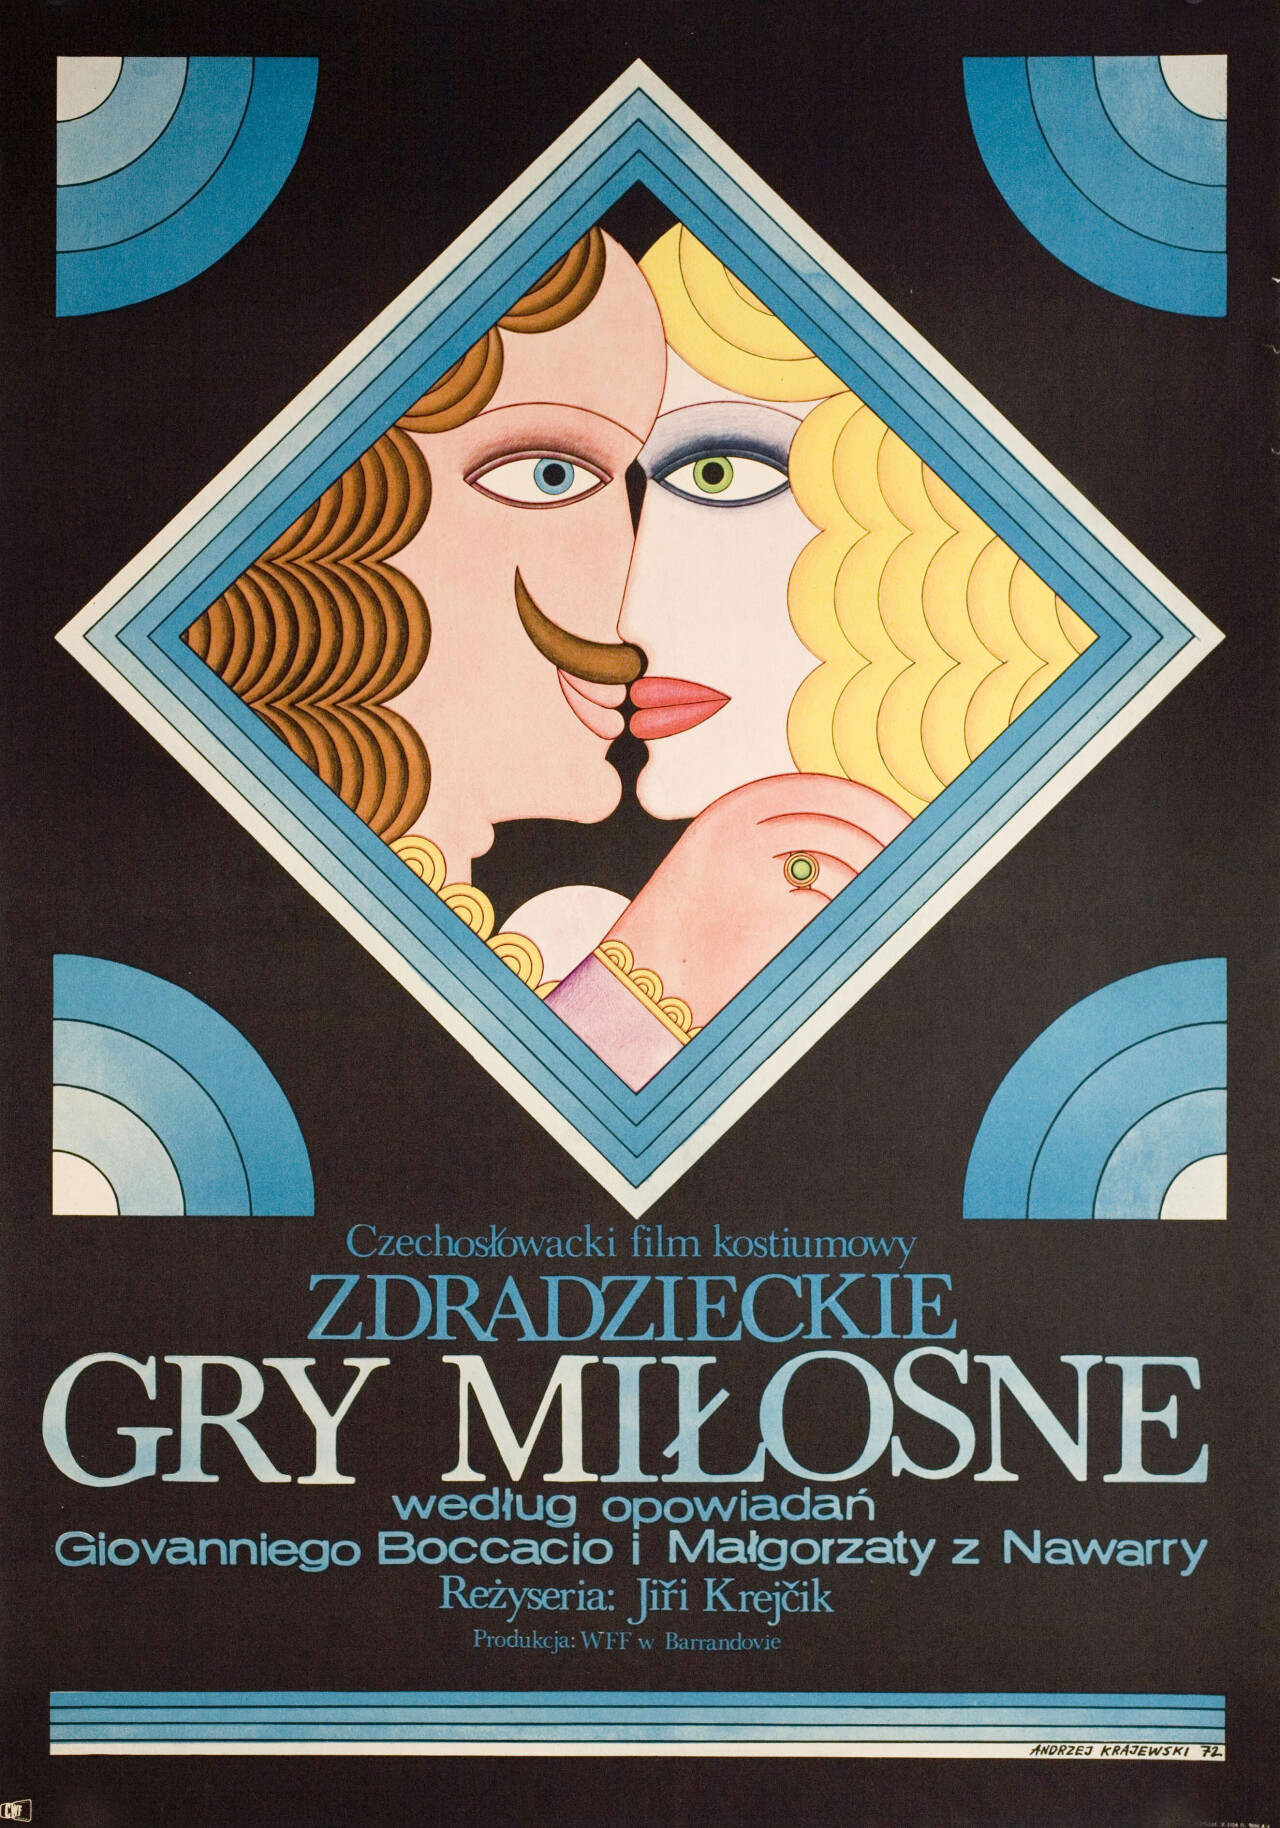 Любви обманчивые игры (The Tricky Game of Love, 1971), режиссёр Иржи Крейчик, польский постер к фильму, автор Анджей Краевский (графический дизайн, 1972 год)